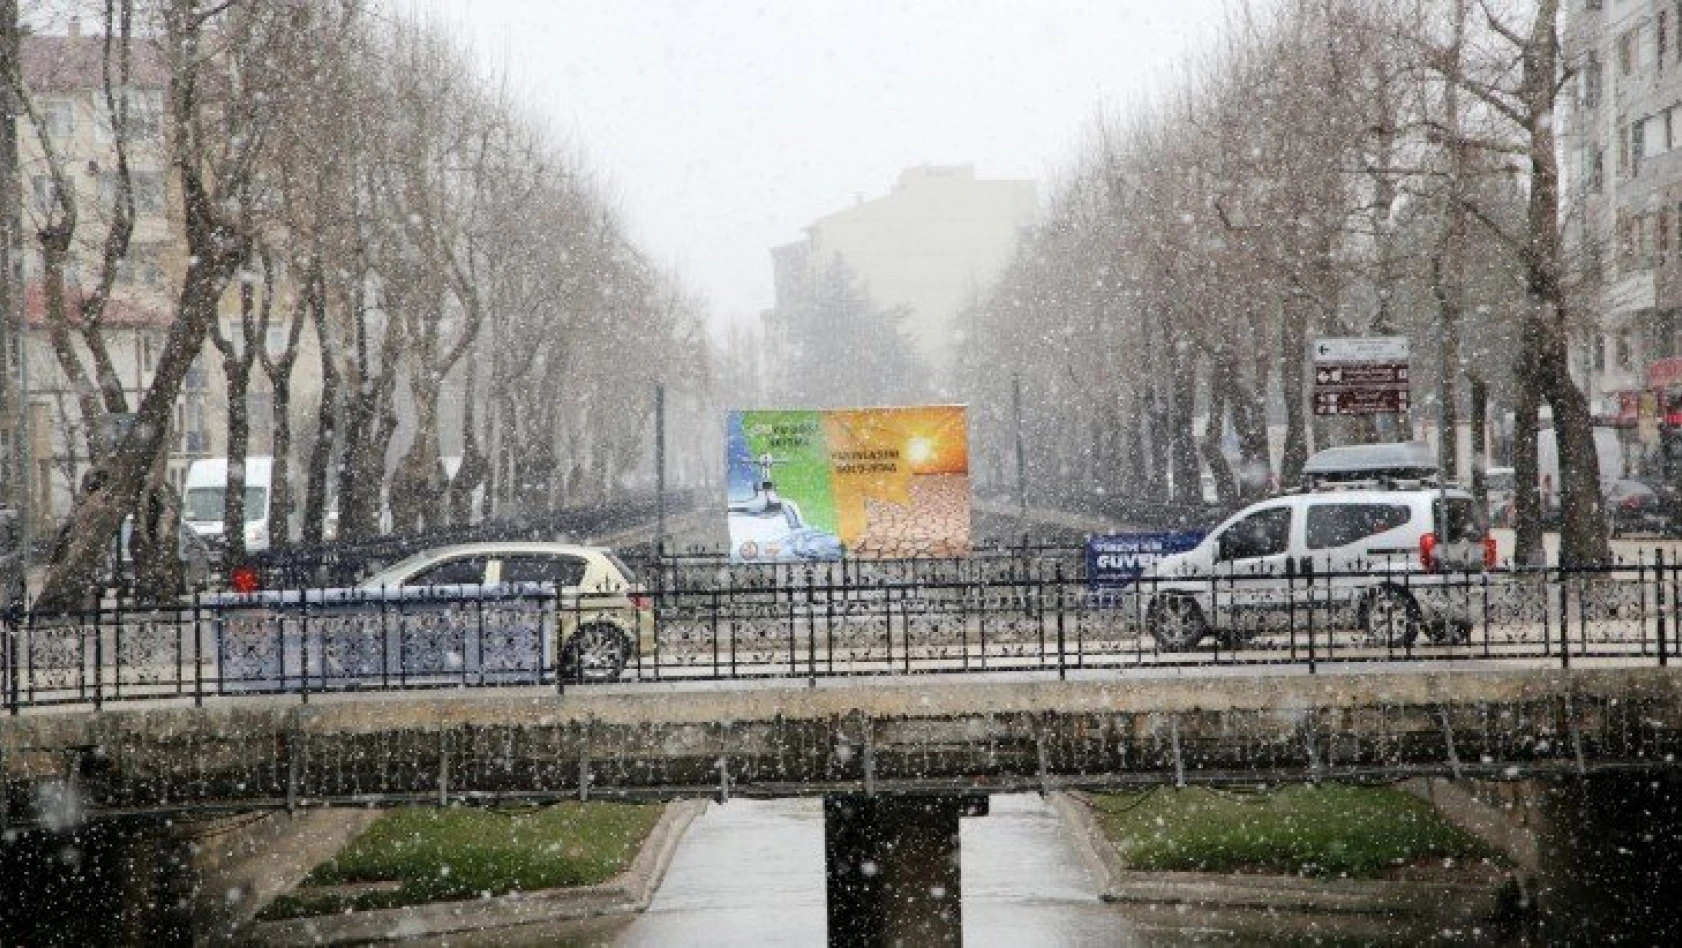 Kastamonu'da kar yağışı ve sis etkili oluyor